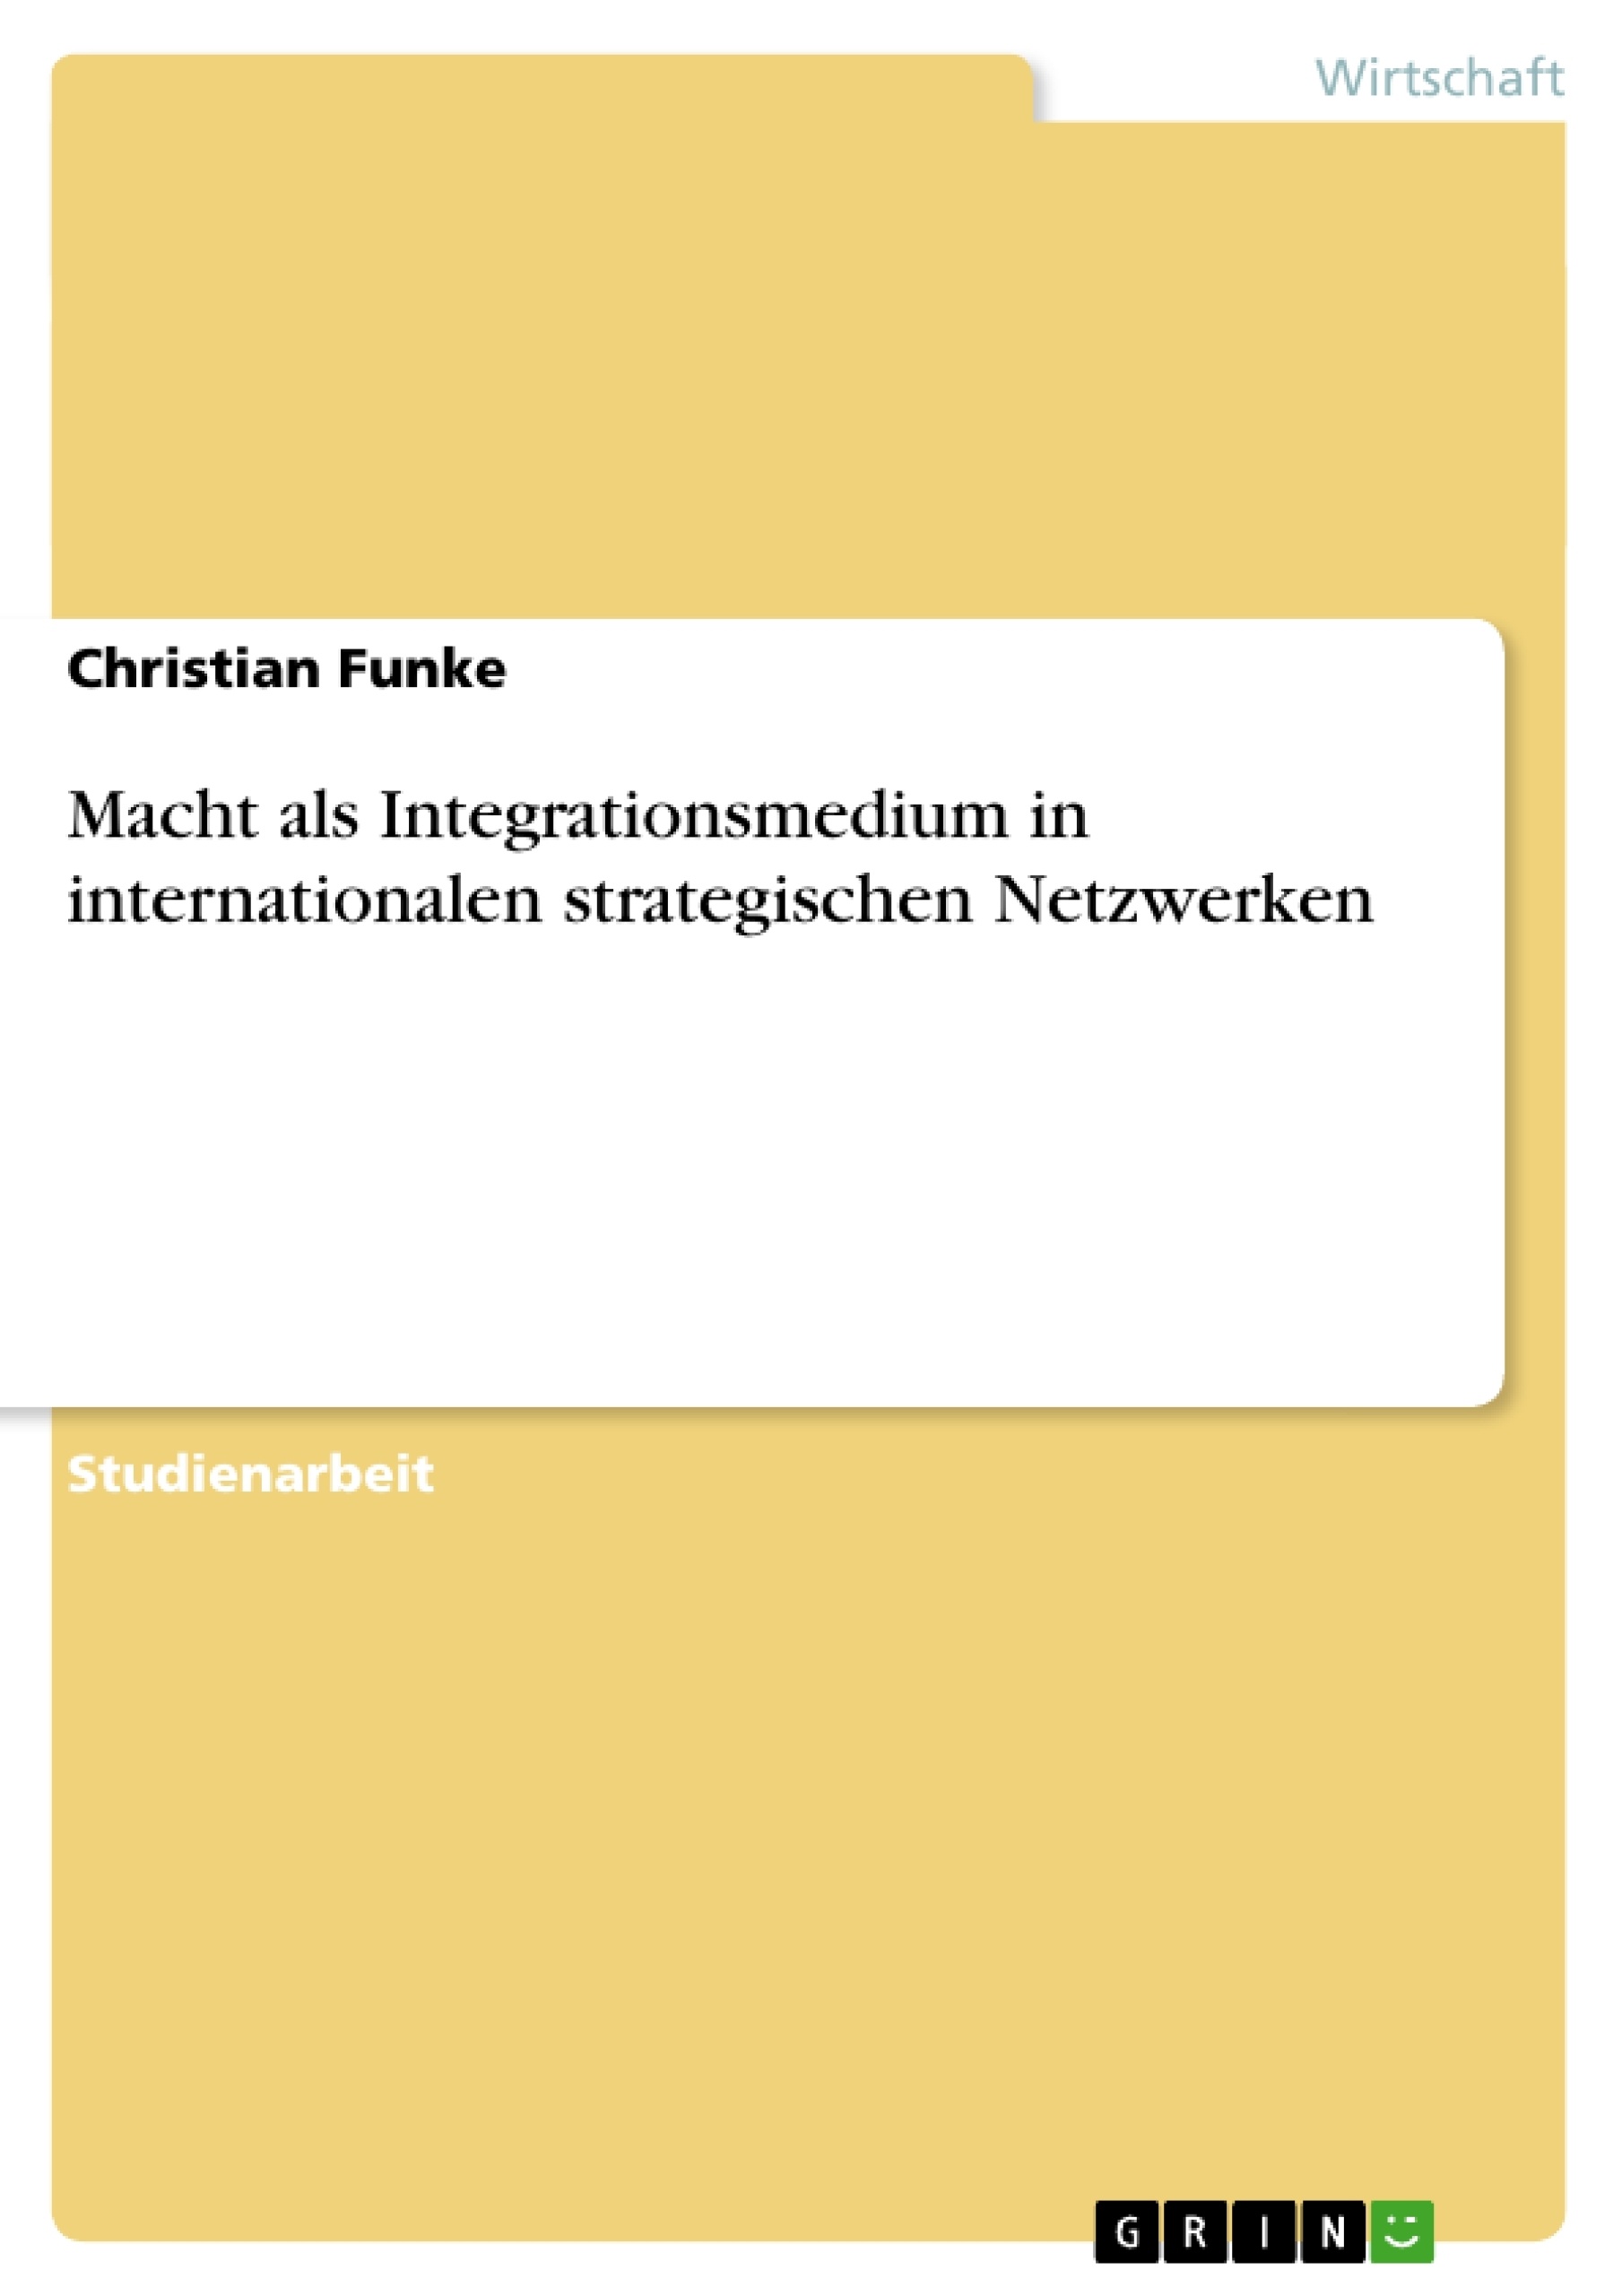 Title: Macht als Integrationsmedium in internationalen strategischen Netzwerken